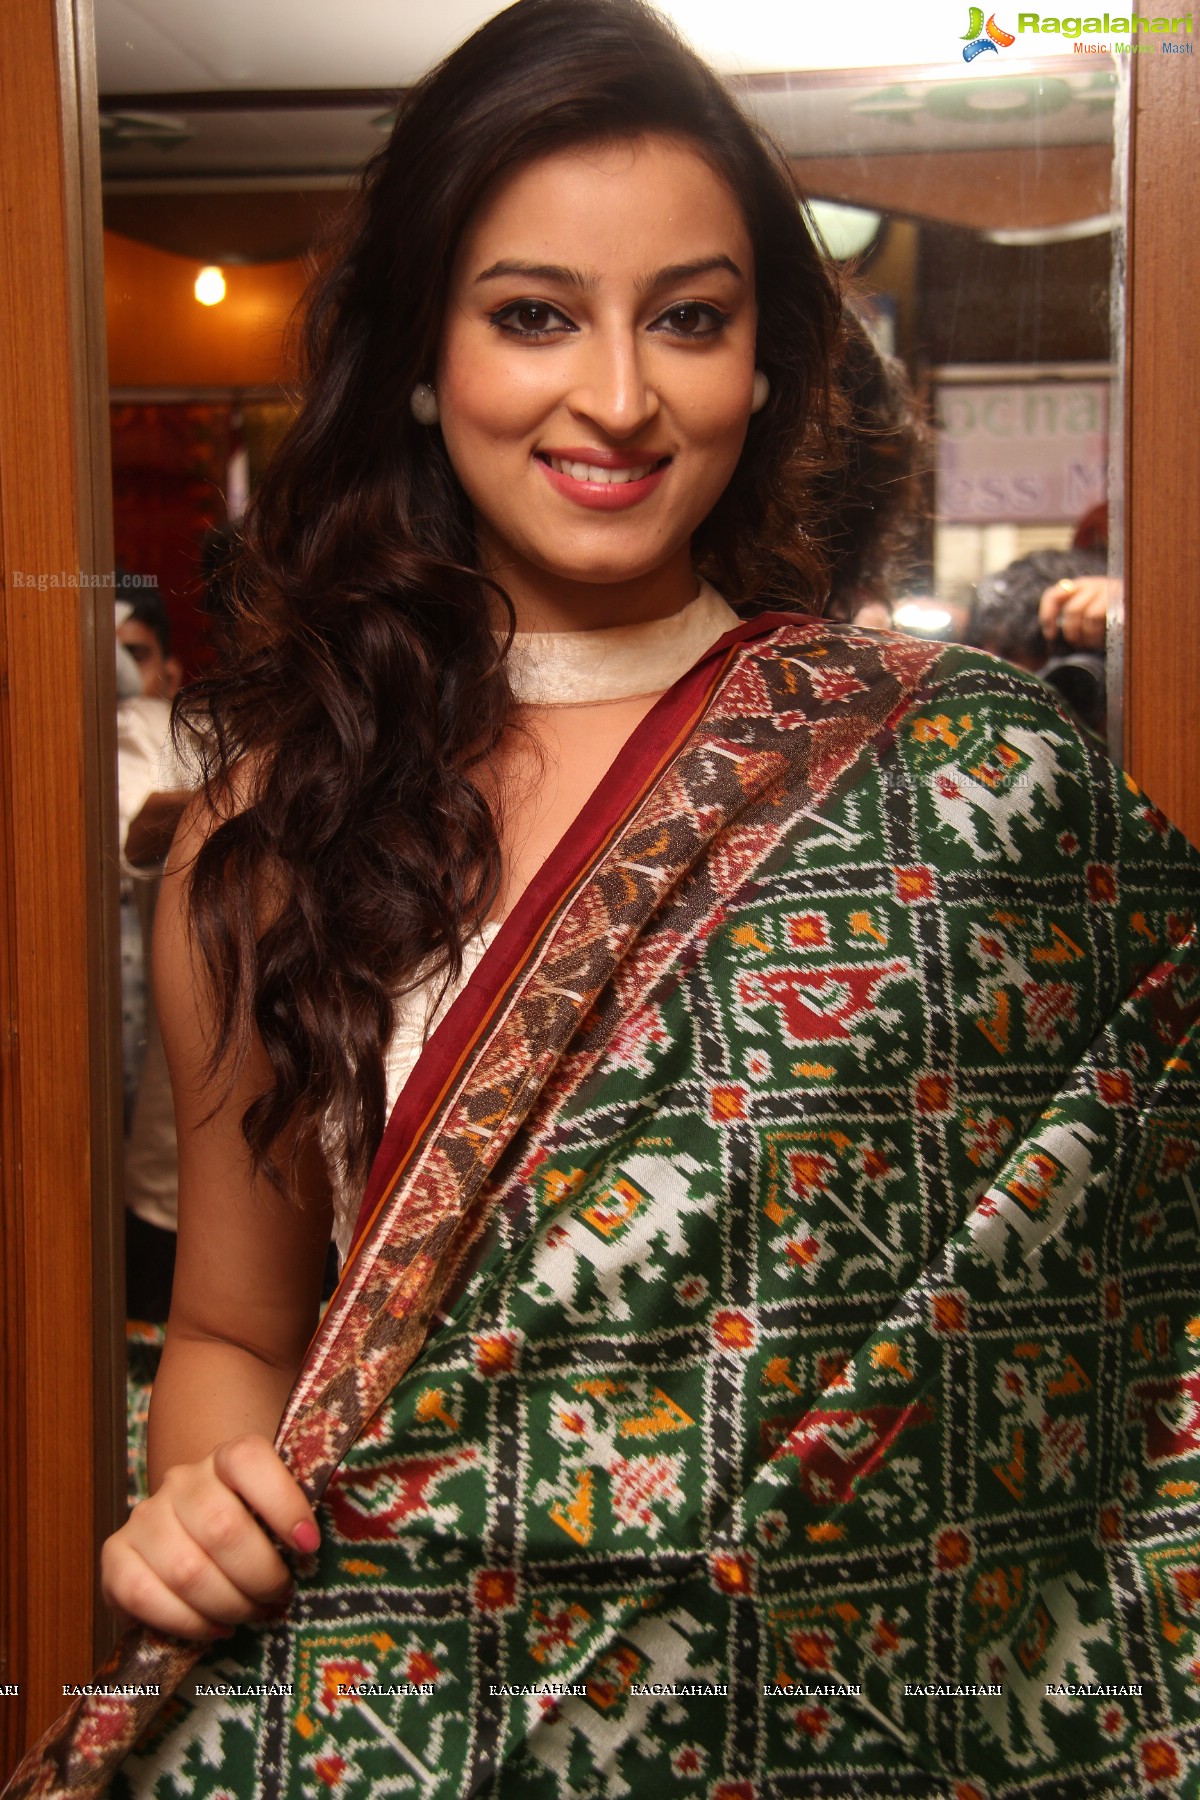 Chandni Sharma